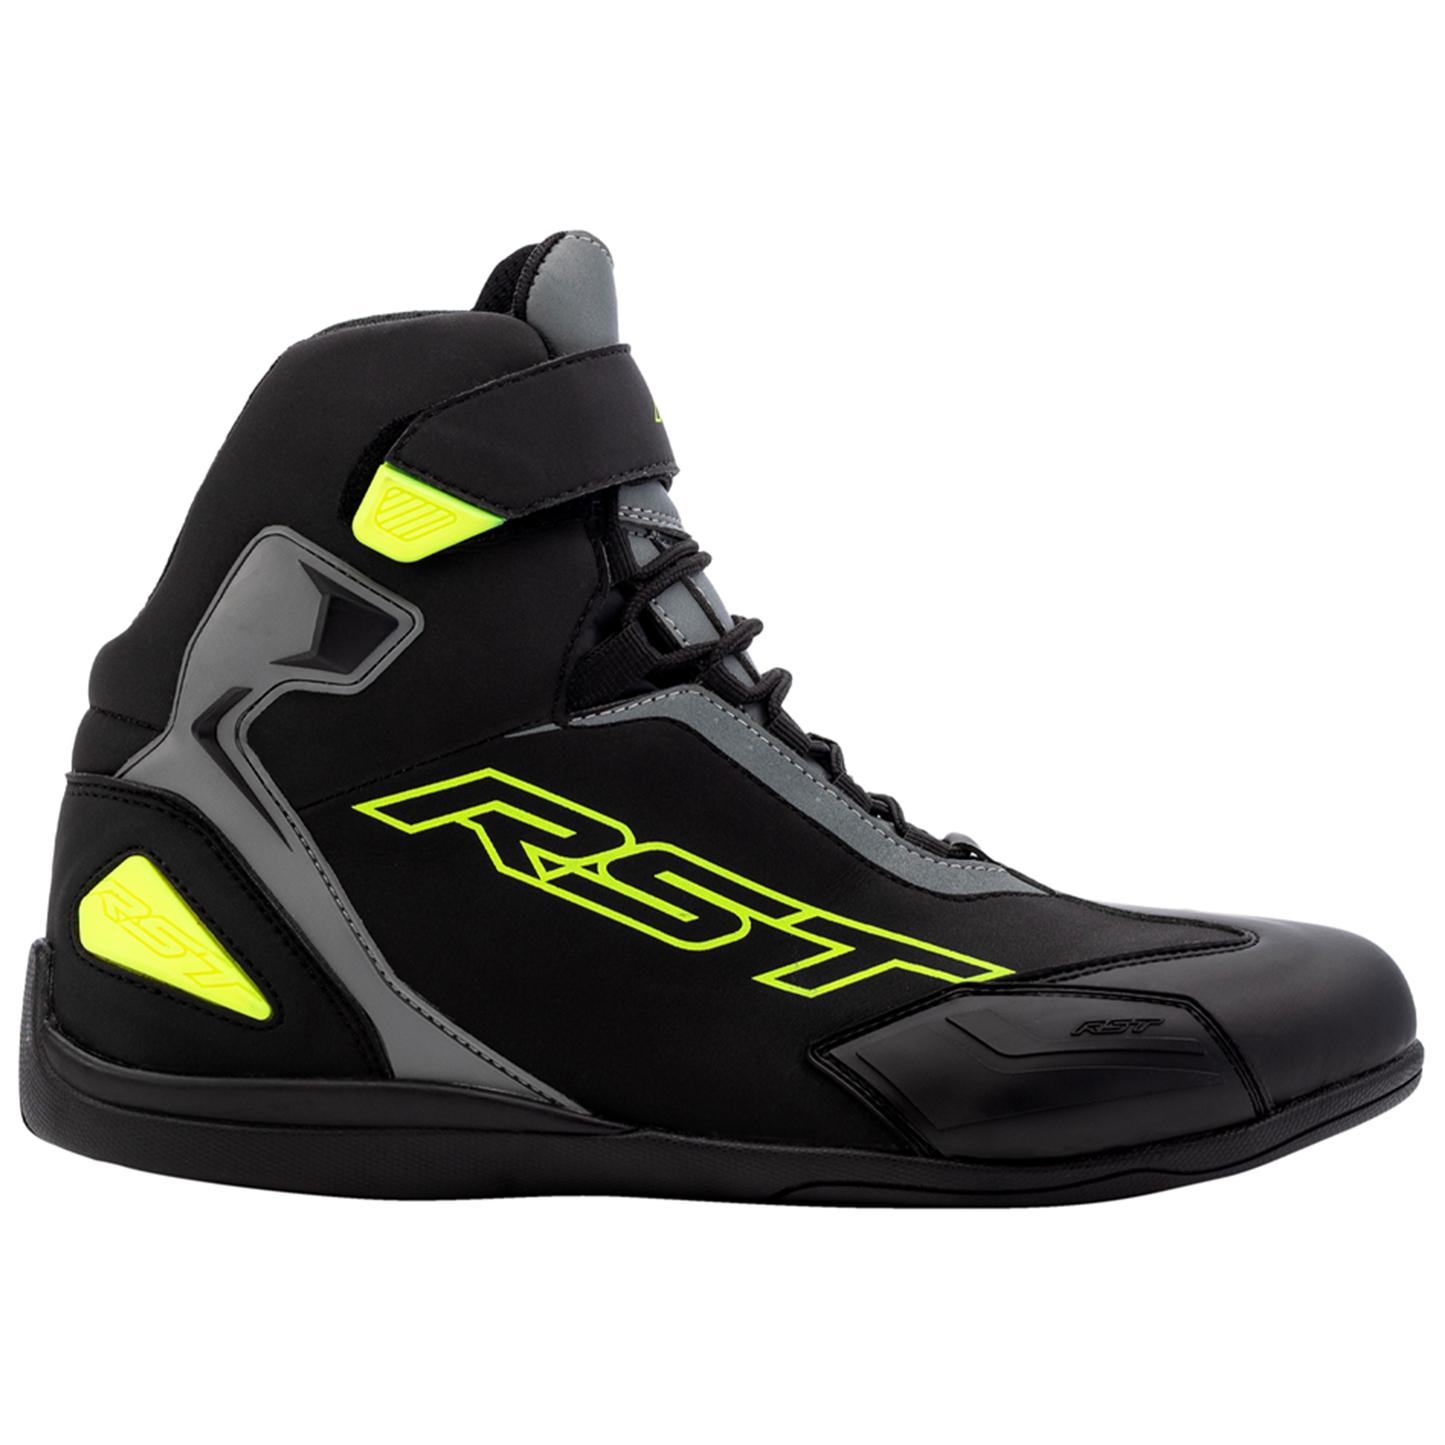 RST Sabre Moto Shoe Men's (CE) Boots - Black/Grey/Flo Yellow (3053)